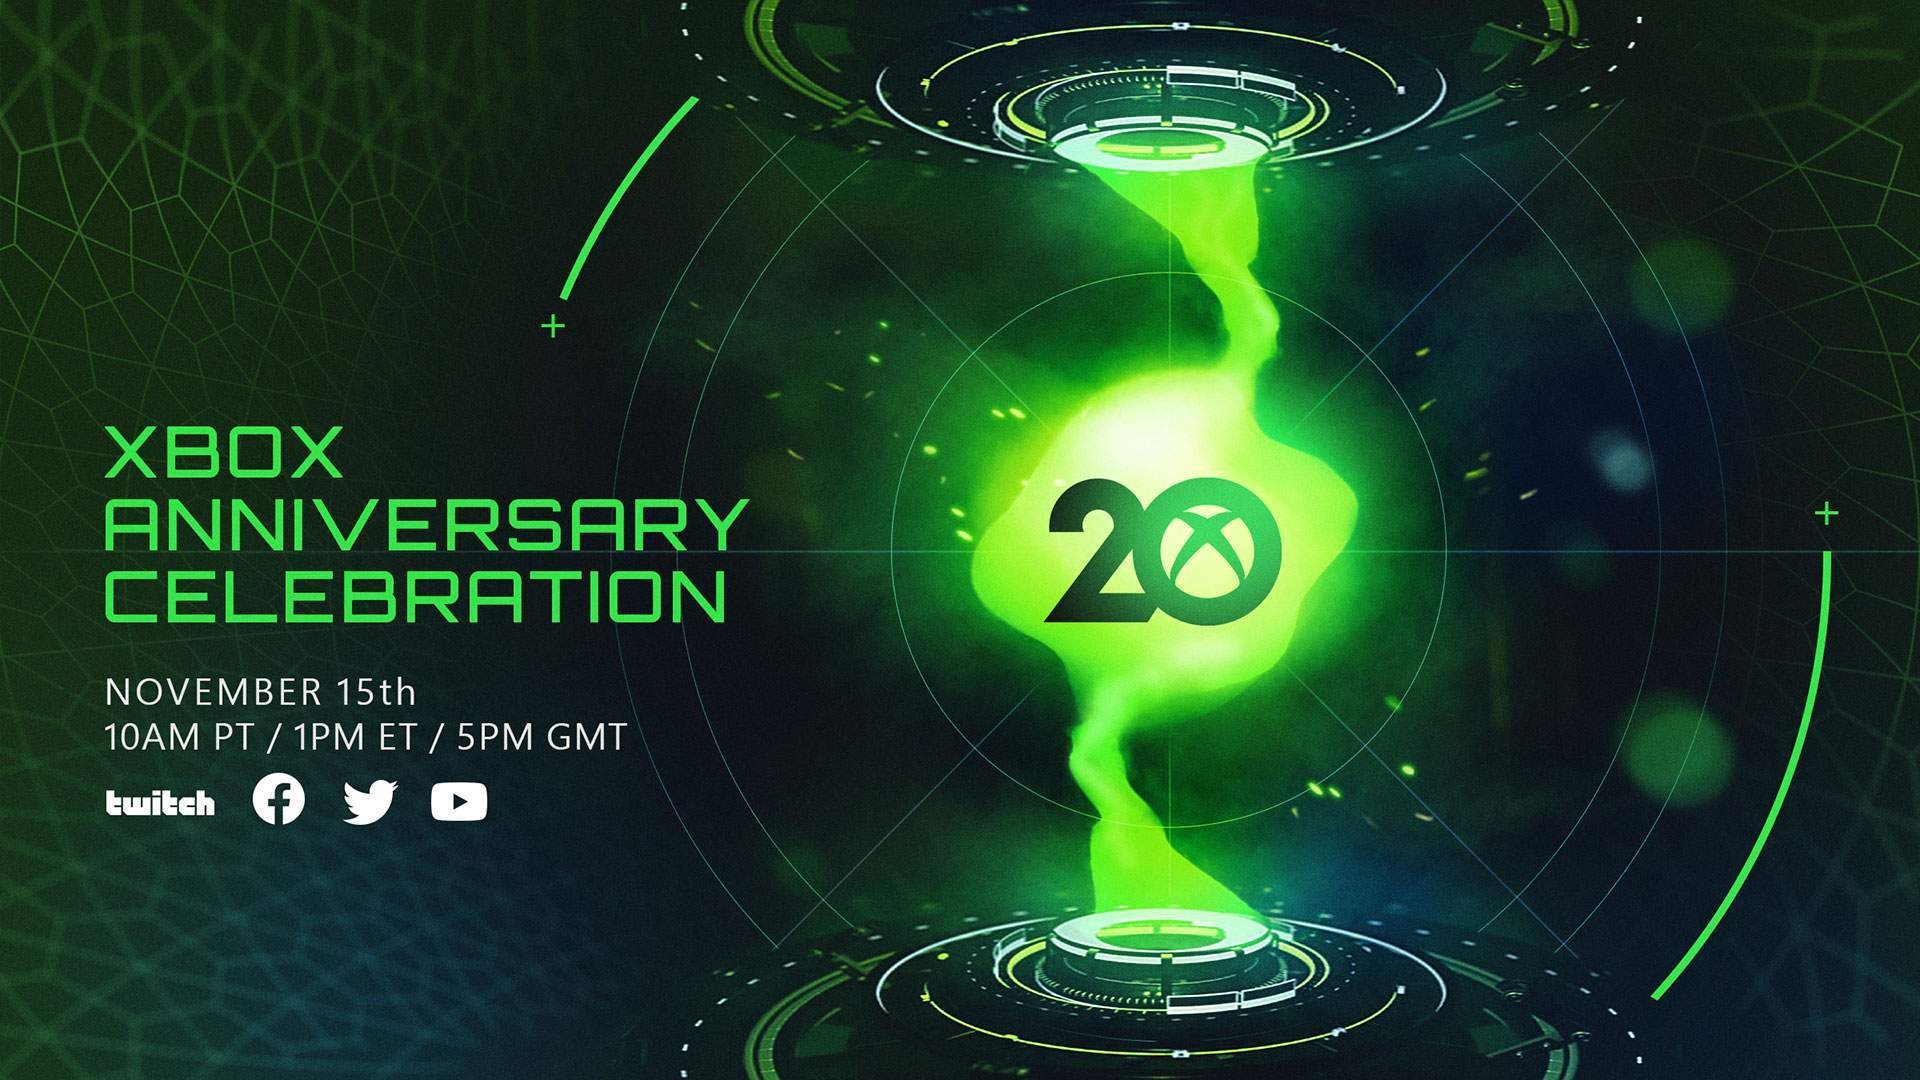 Este ha sido un año extraordinario para el equipo de Xbox y para ti, nuestros fans. Dimos la bienvenida a Bethesda a la familia